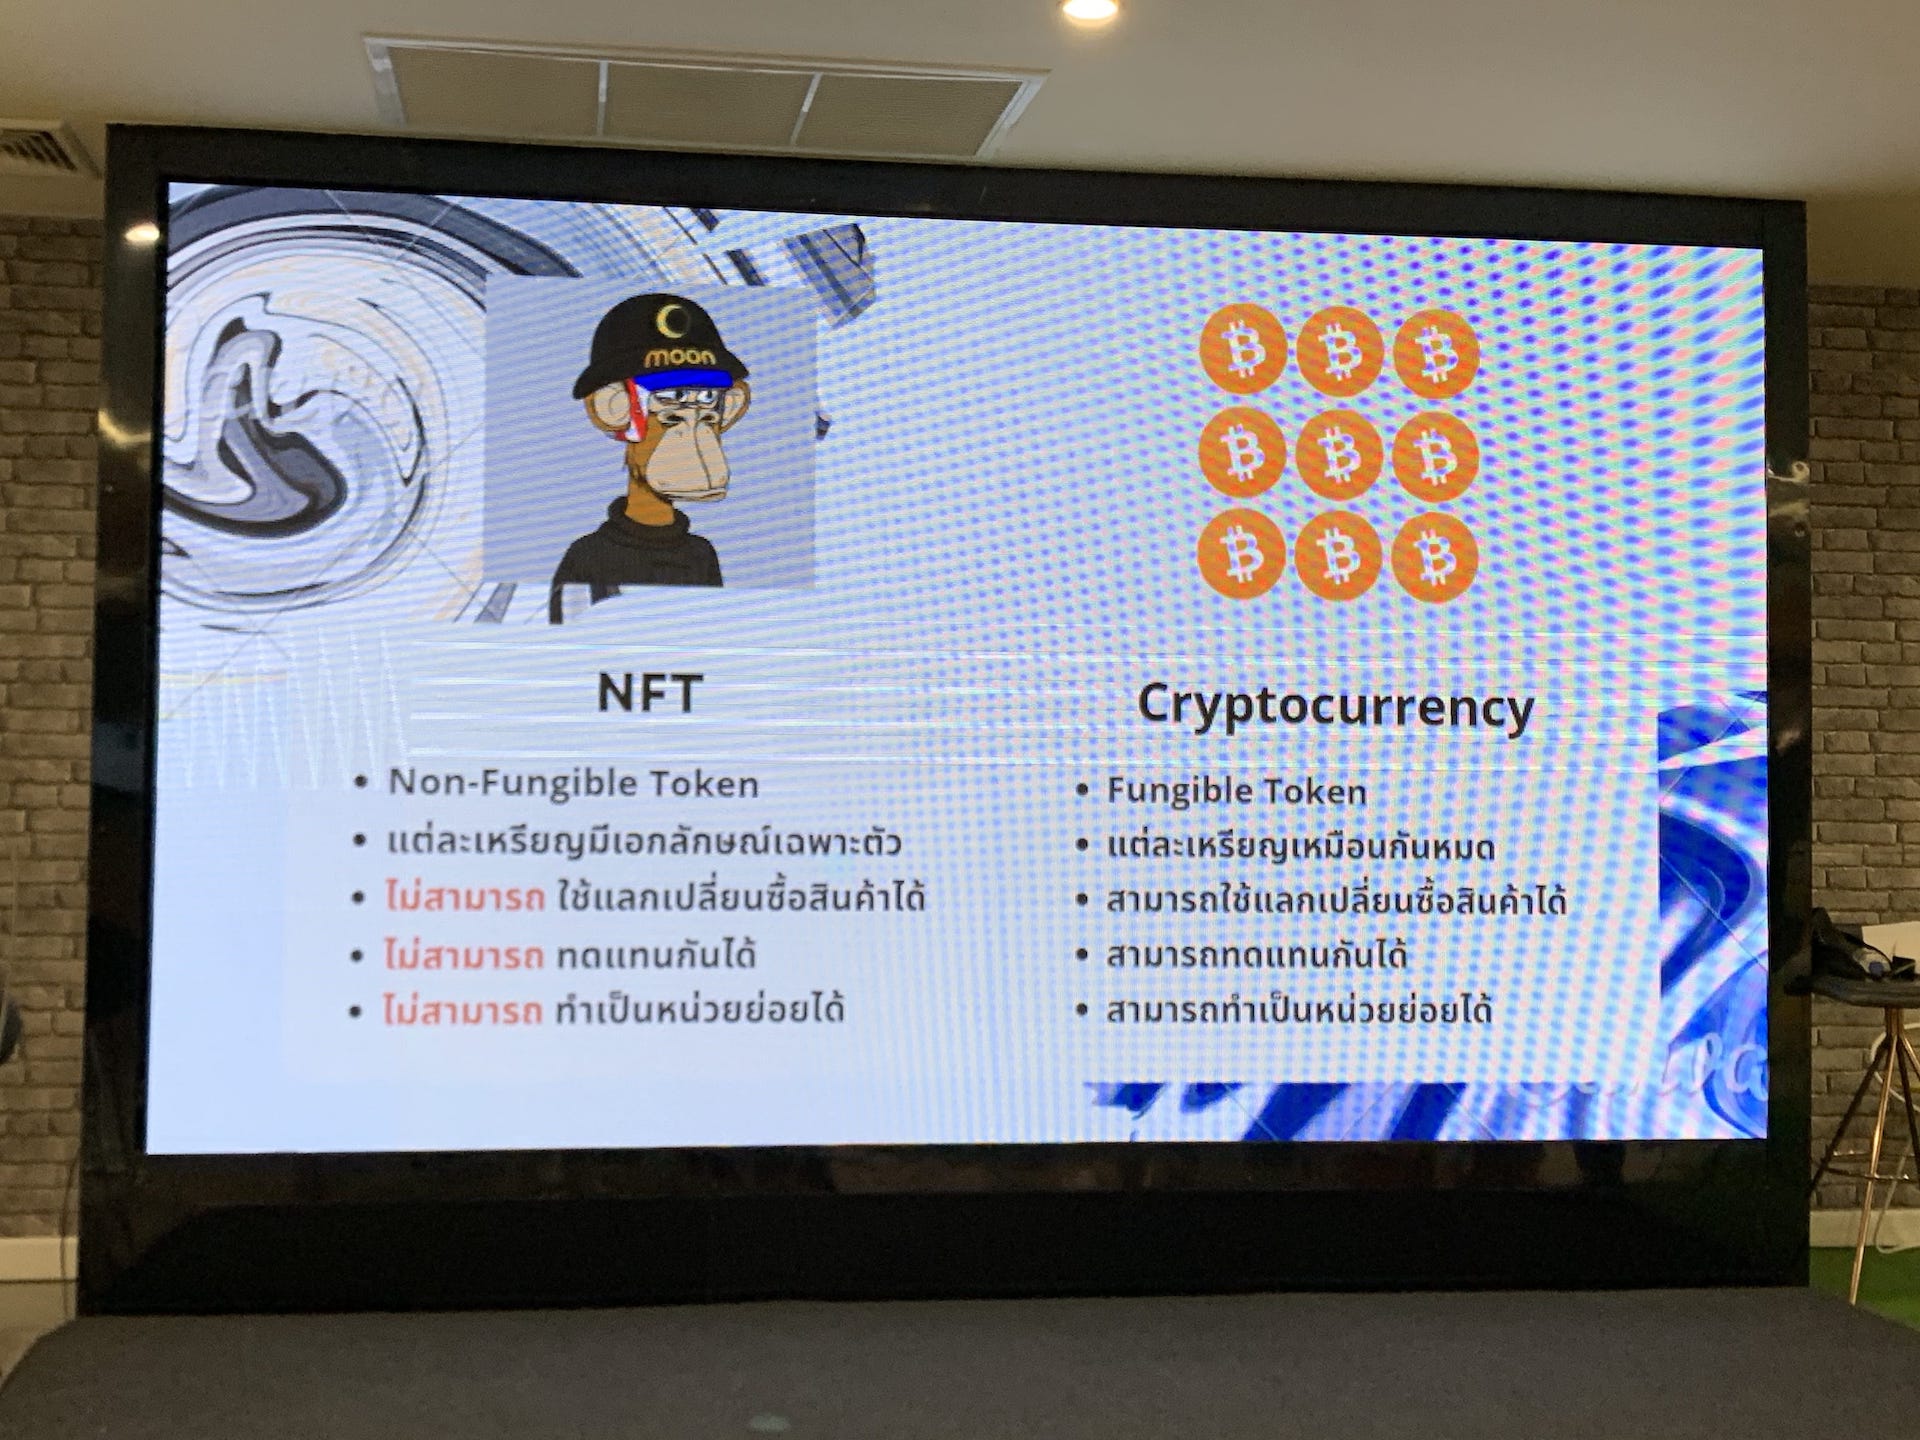 ความแตกต่างระหว่าง NFT และ Cryptocurrency